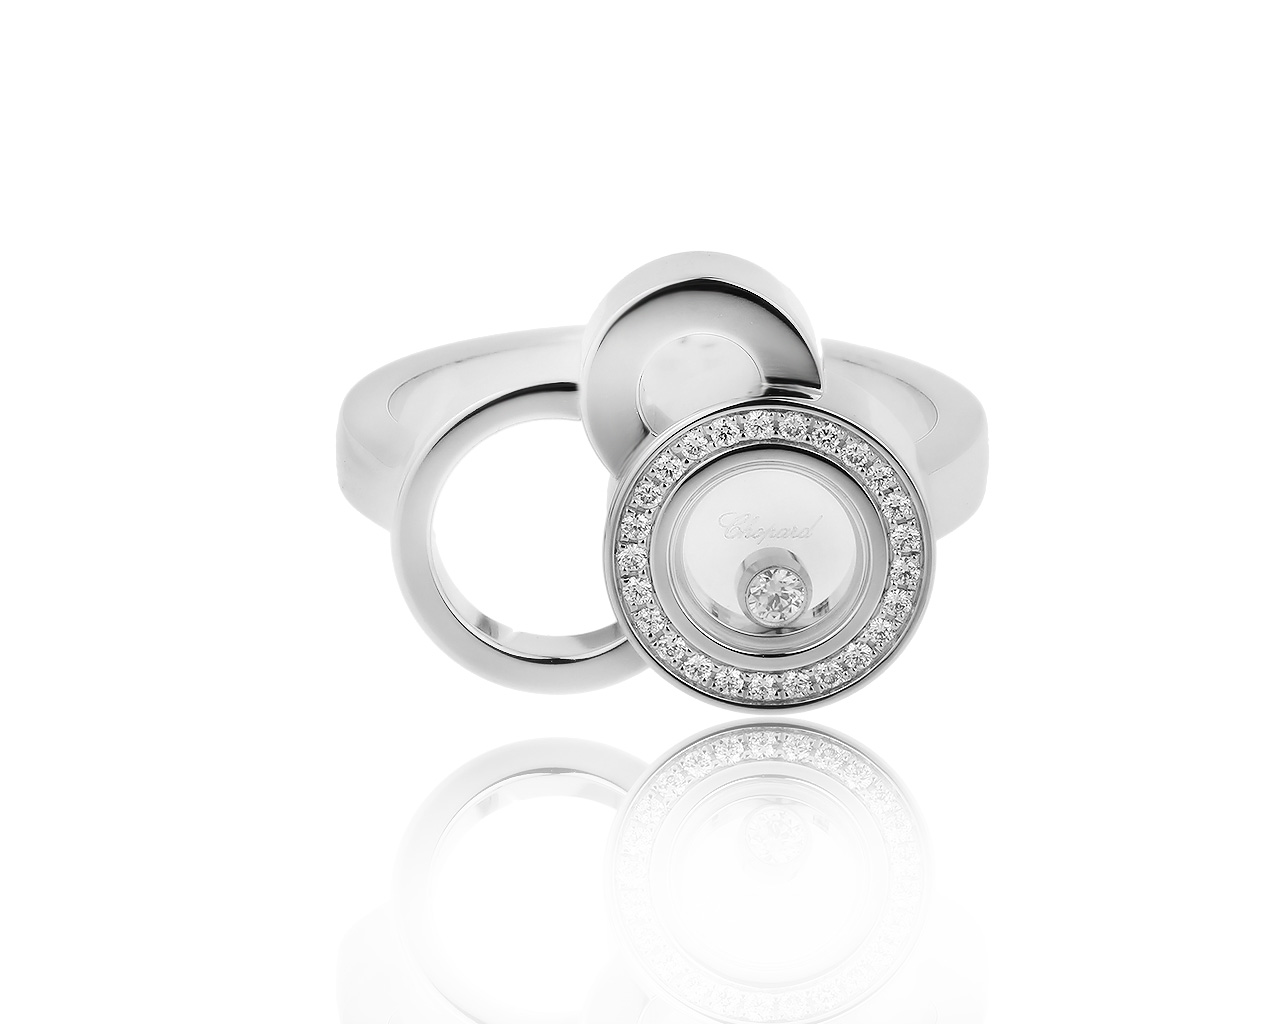 Оригинальное золотое кольцо с бриллиантами 0.11ct Chopard